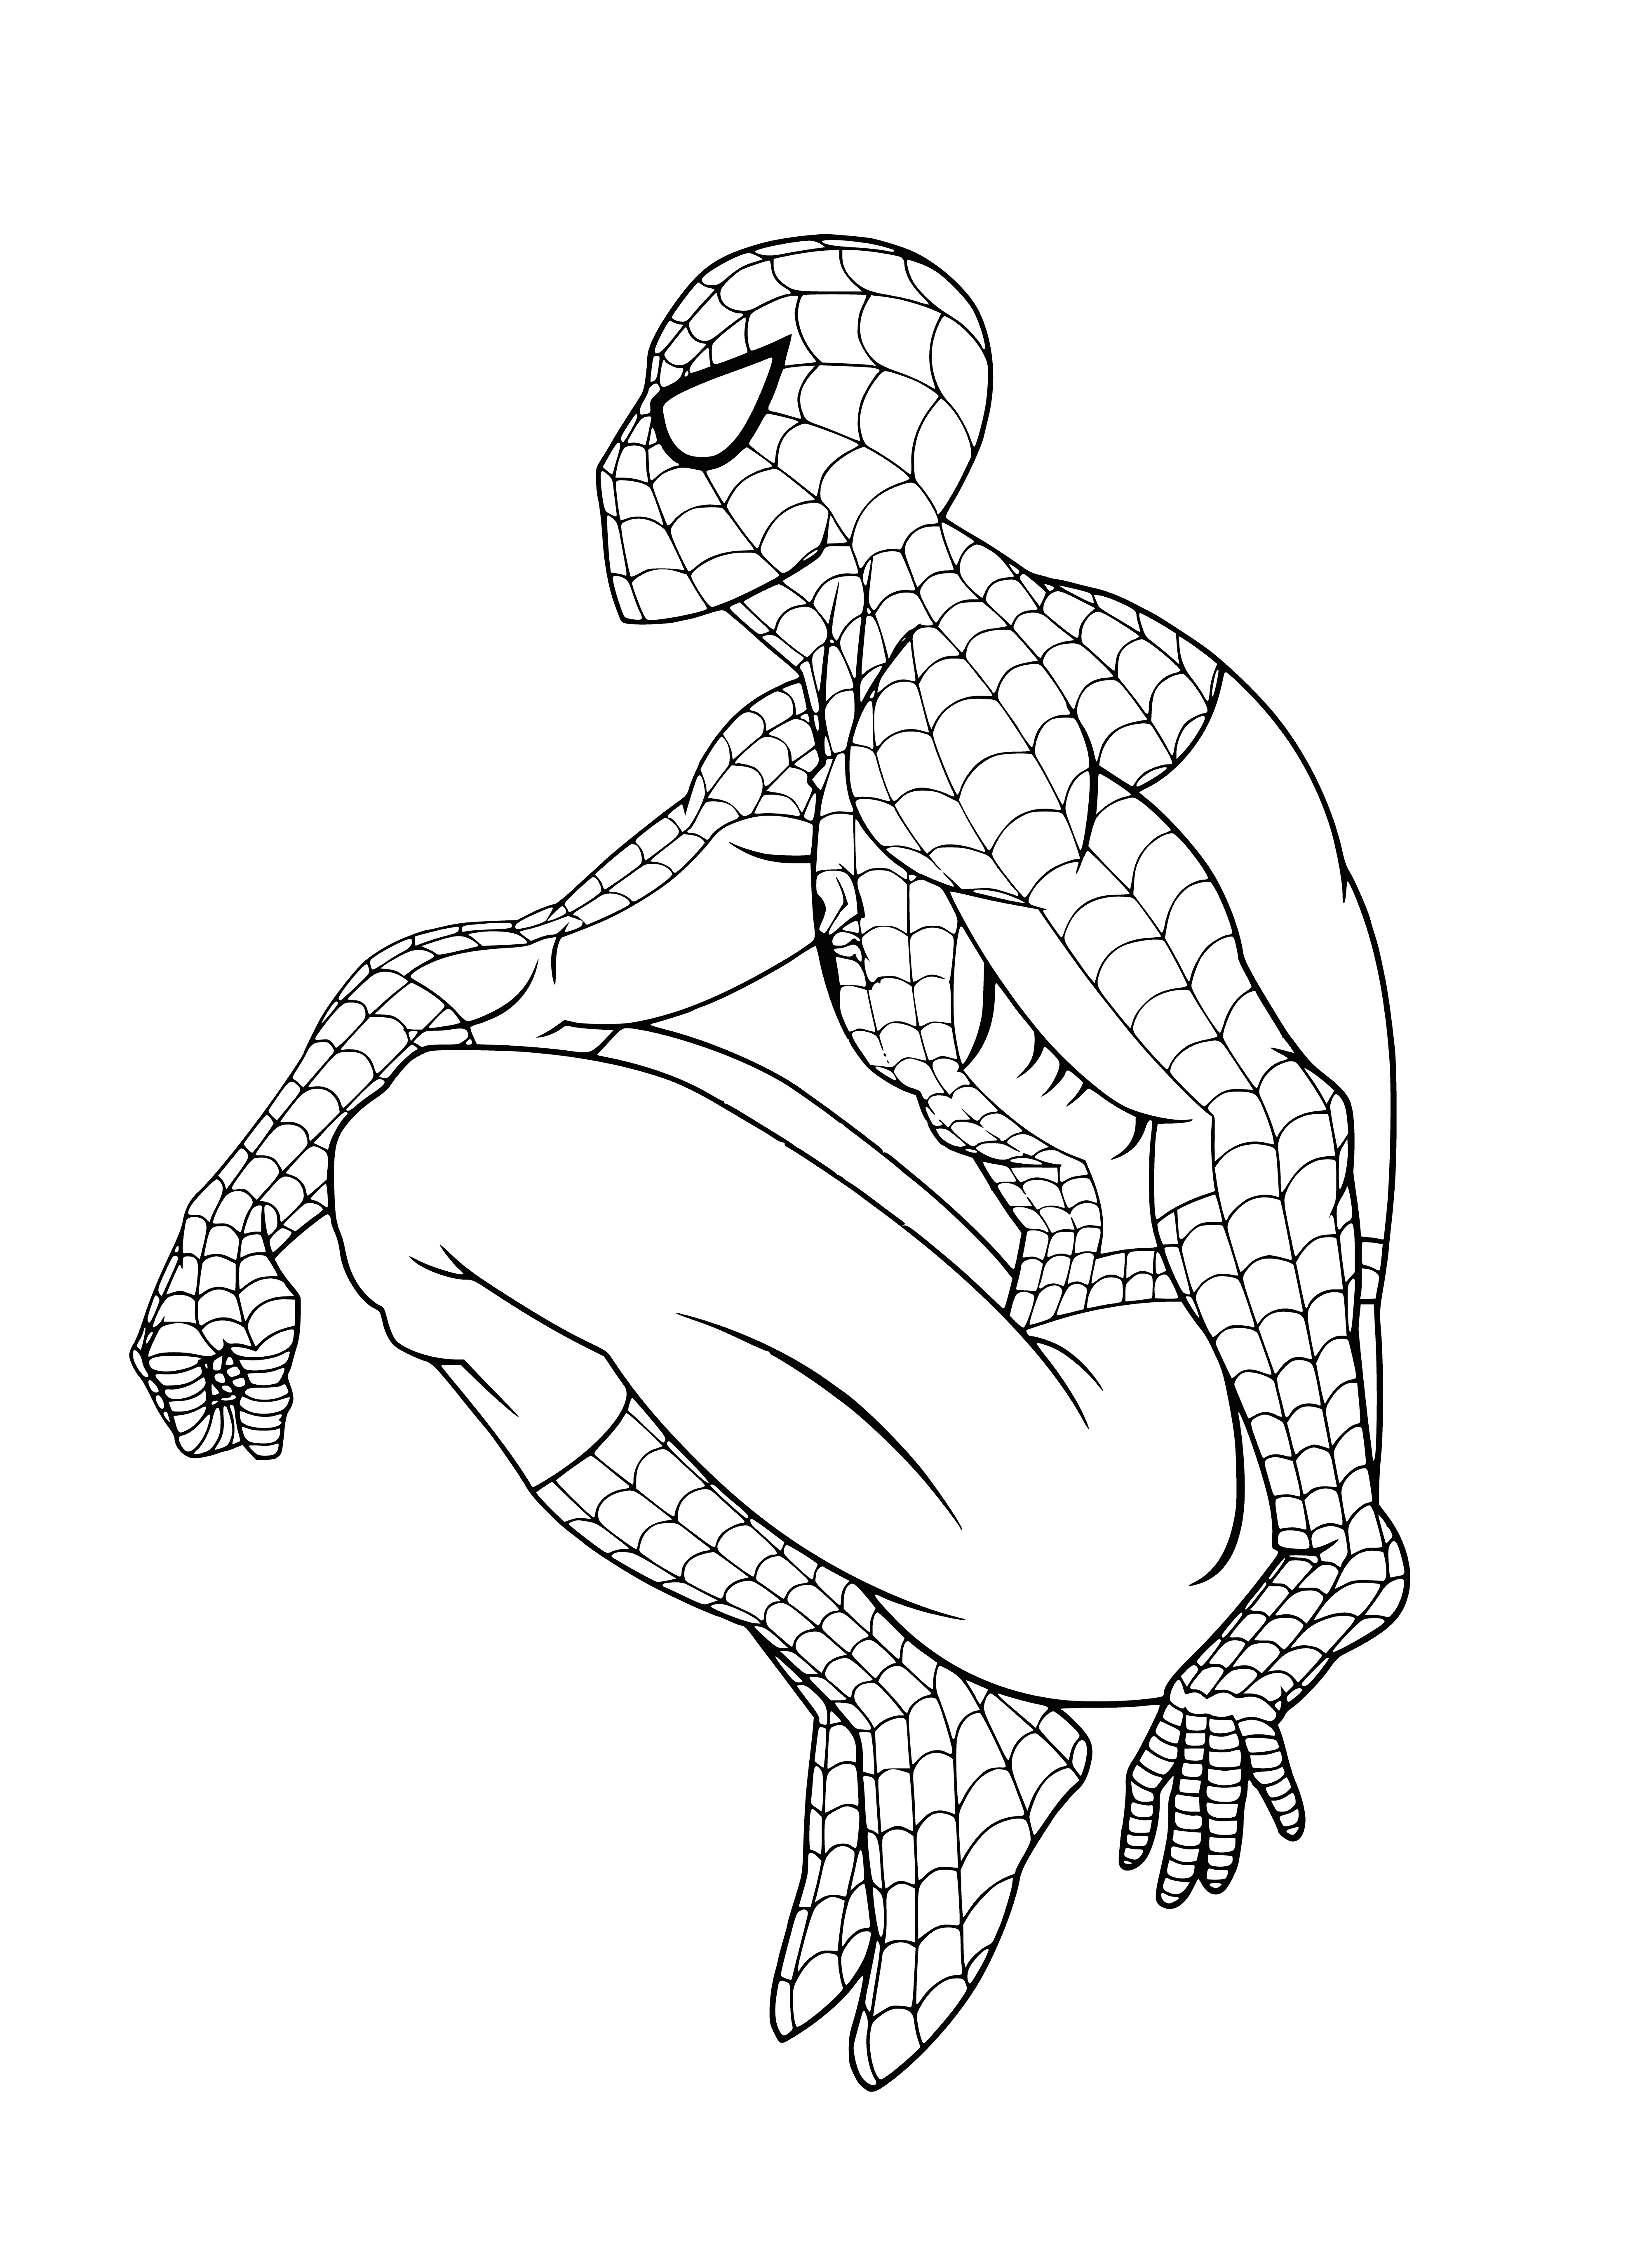 Homme araignée coloriage